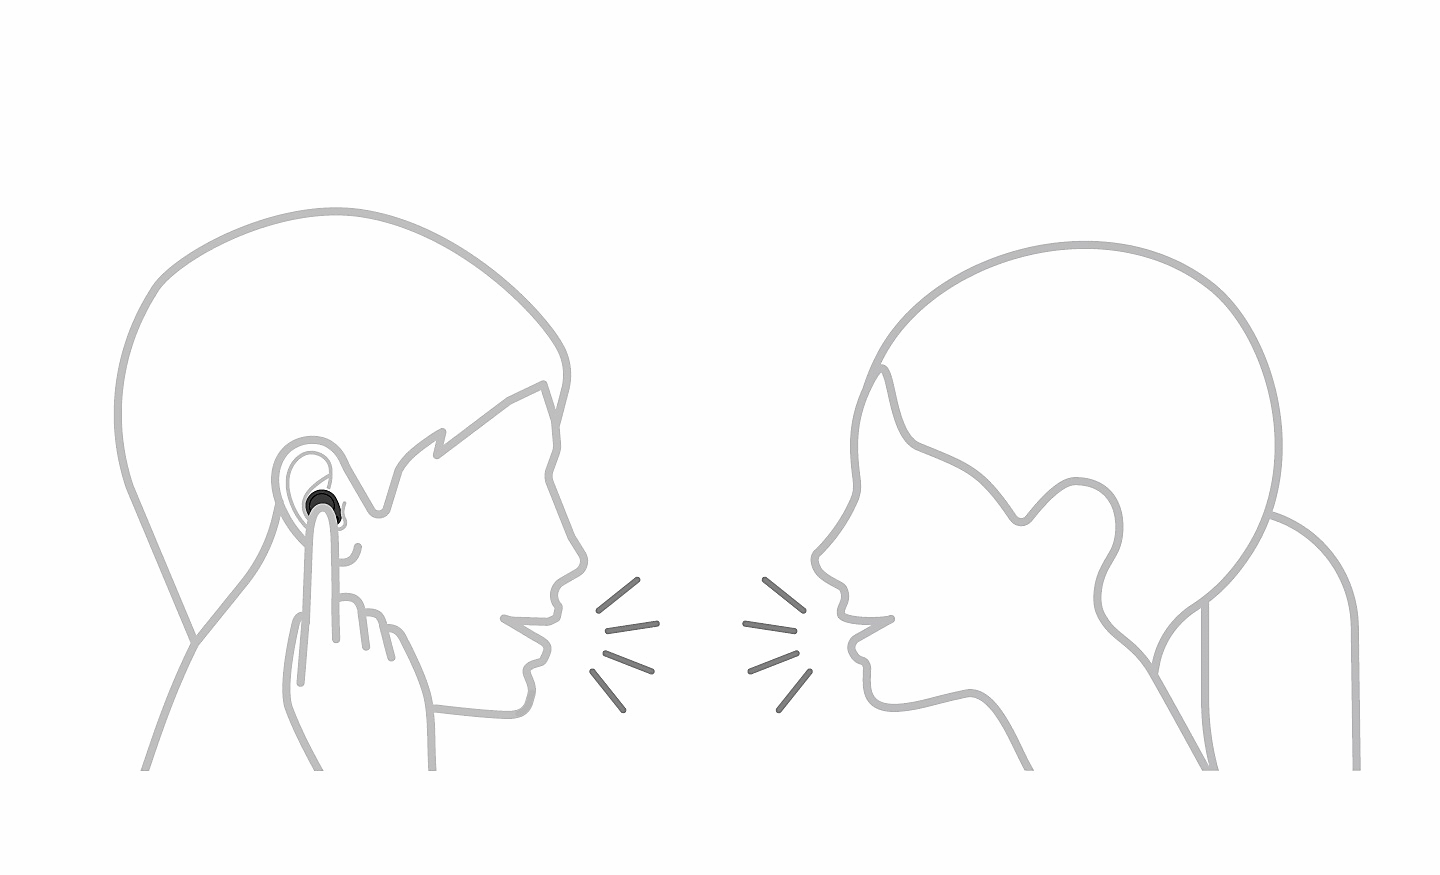 رسم خطي لشخصين يتحدثان، أحدهما يلمس سماعة الرأس بإصبع واحد وتوجد أيقونة إيقاف مؤقت في أعلى اليسار